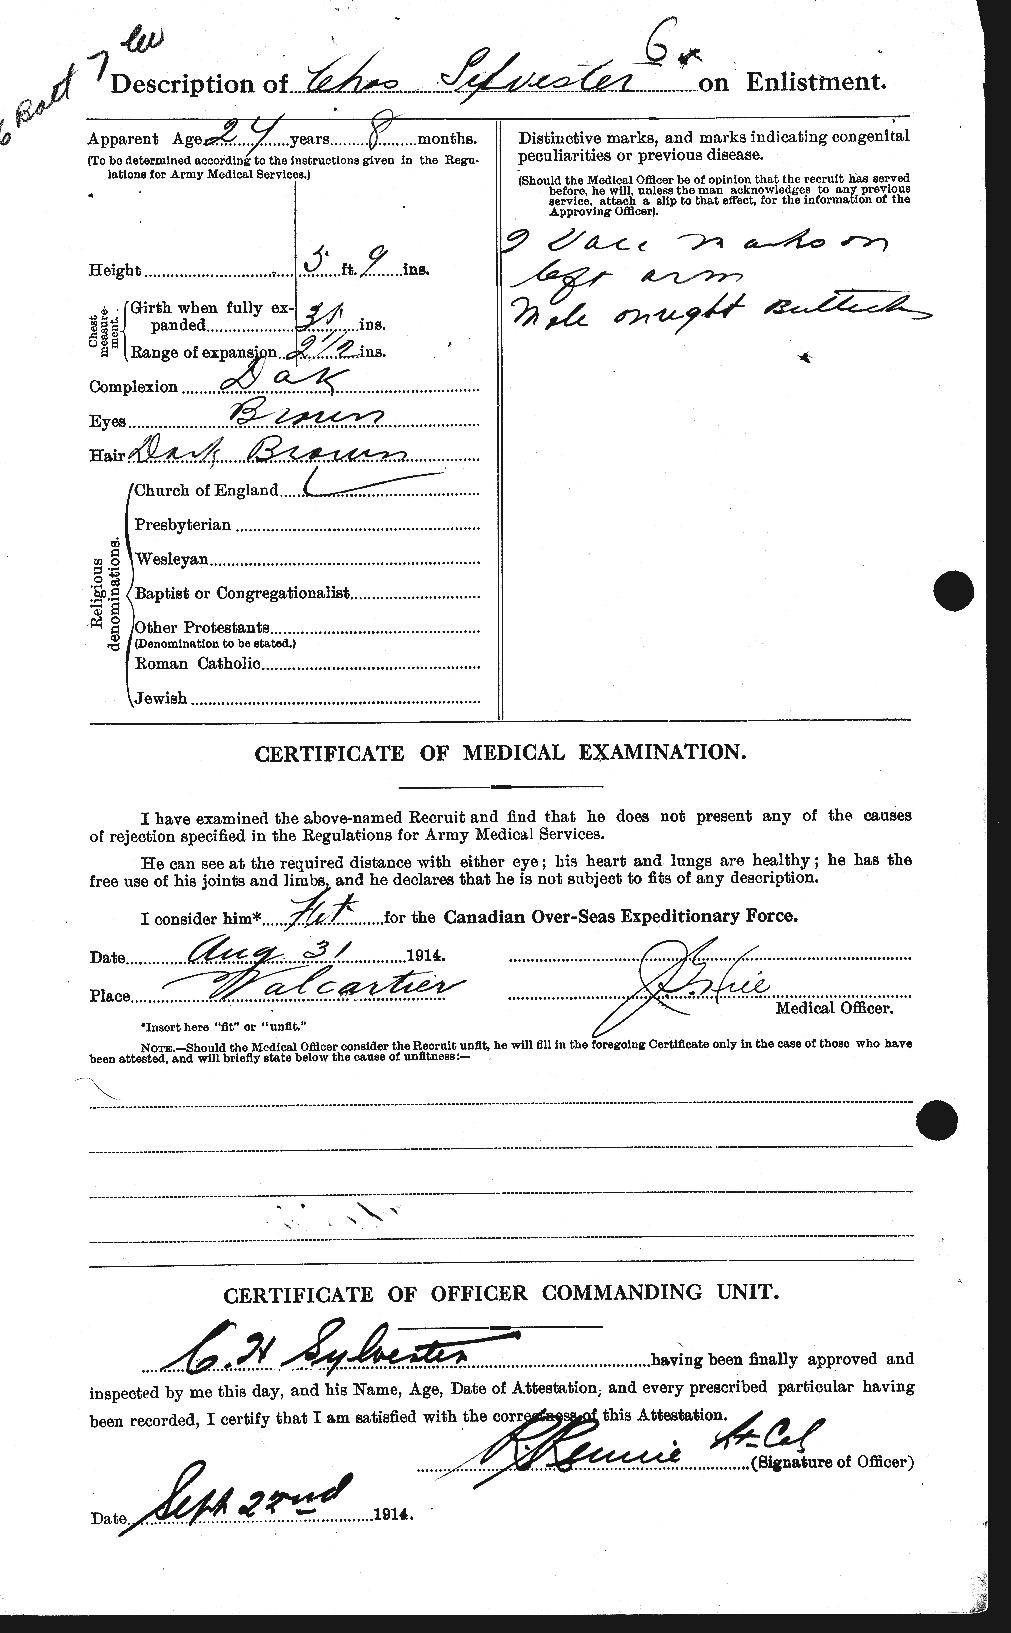 Dossiers du Personnel de la Première Guerre mondiale - CEC 095809b